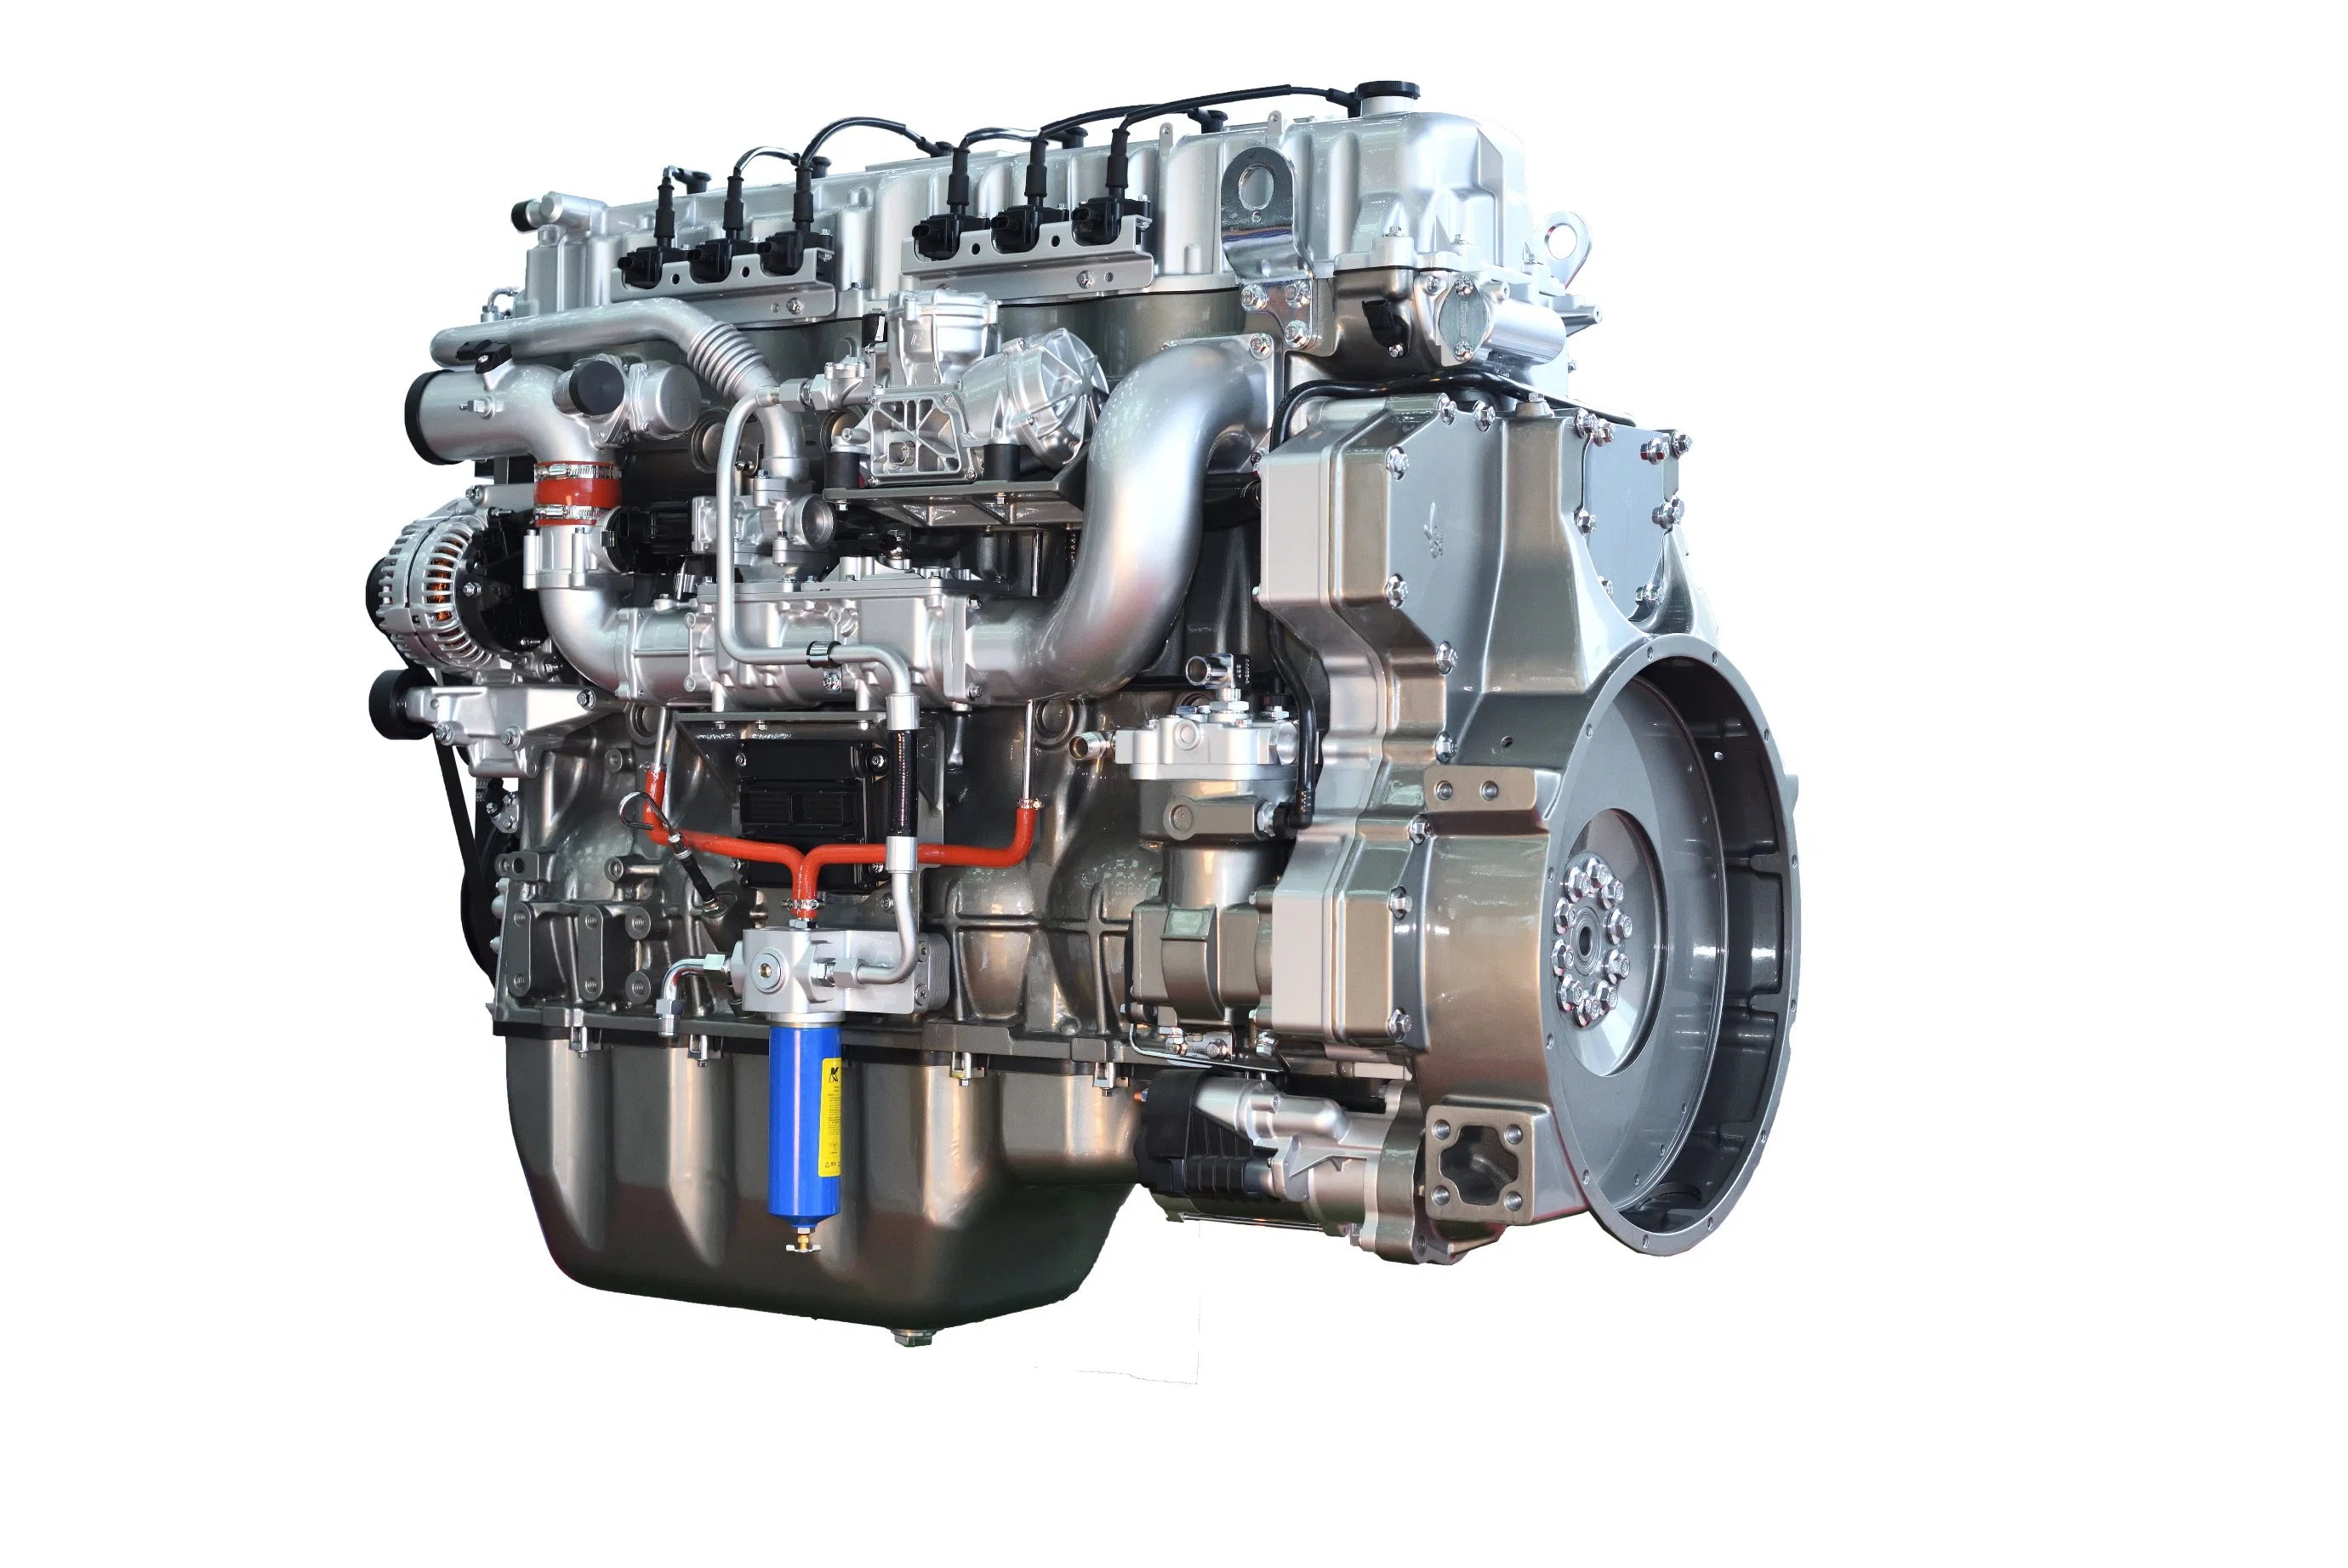 Дизельный двигатель Stabel Yuchai 6K13 Euro 5 для тяжелых условий эксплуатации с высокой мощностью, высокой надежностью, низким расходом топлива, достаточной мощностью